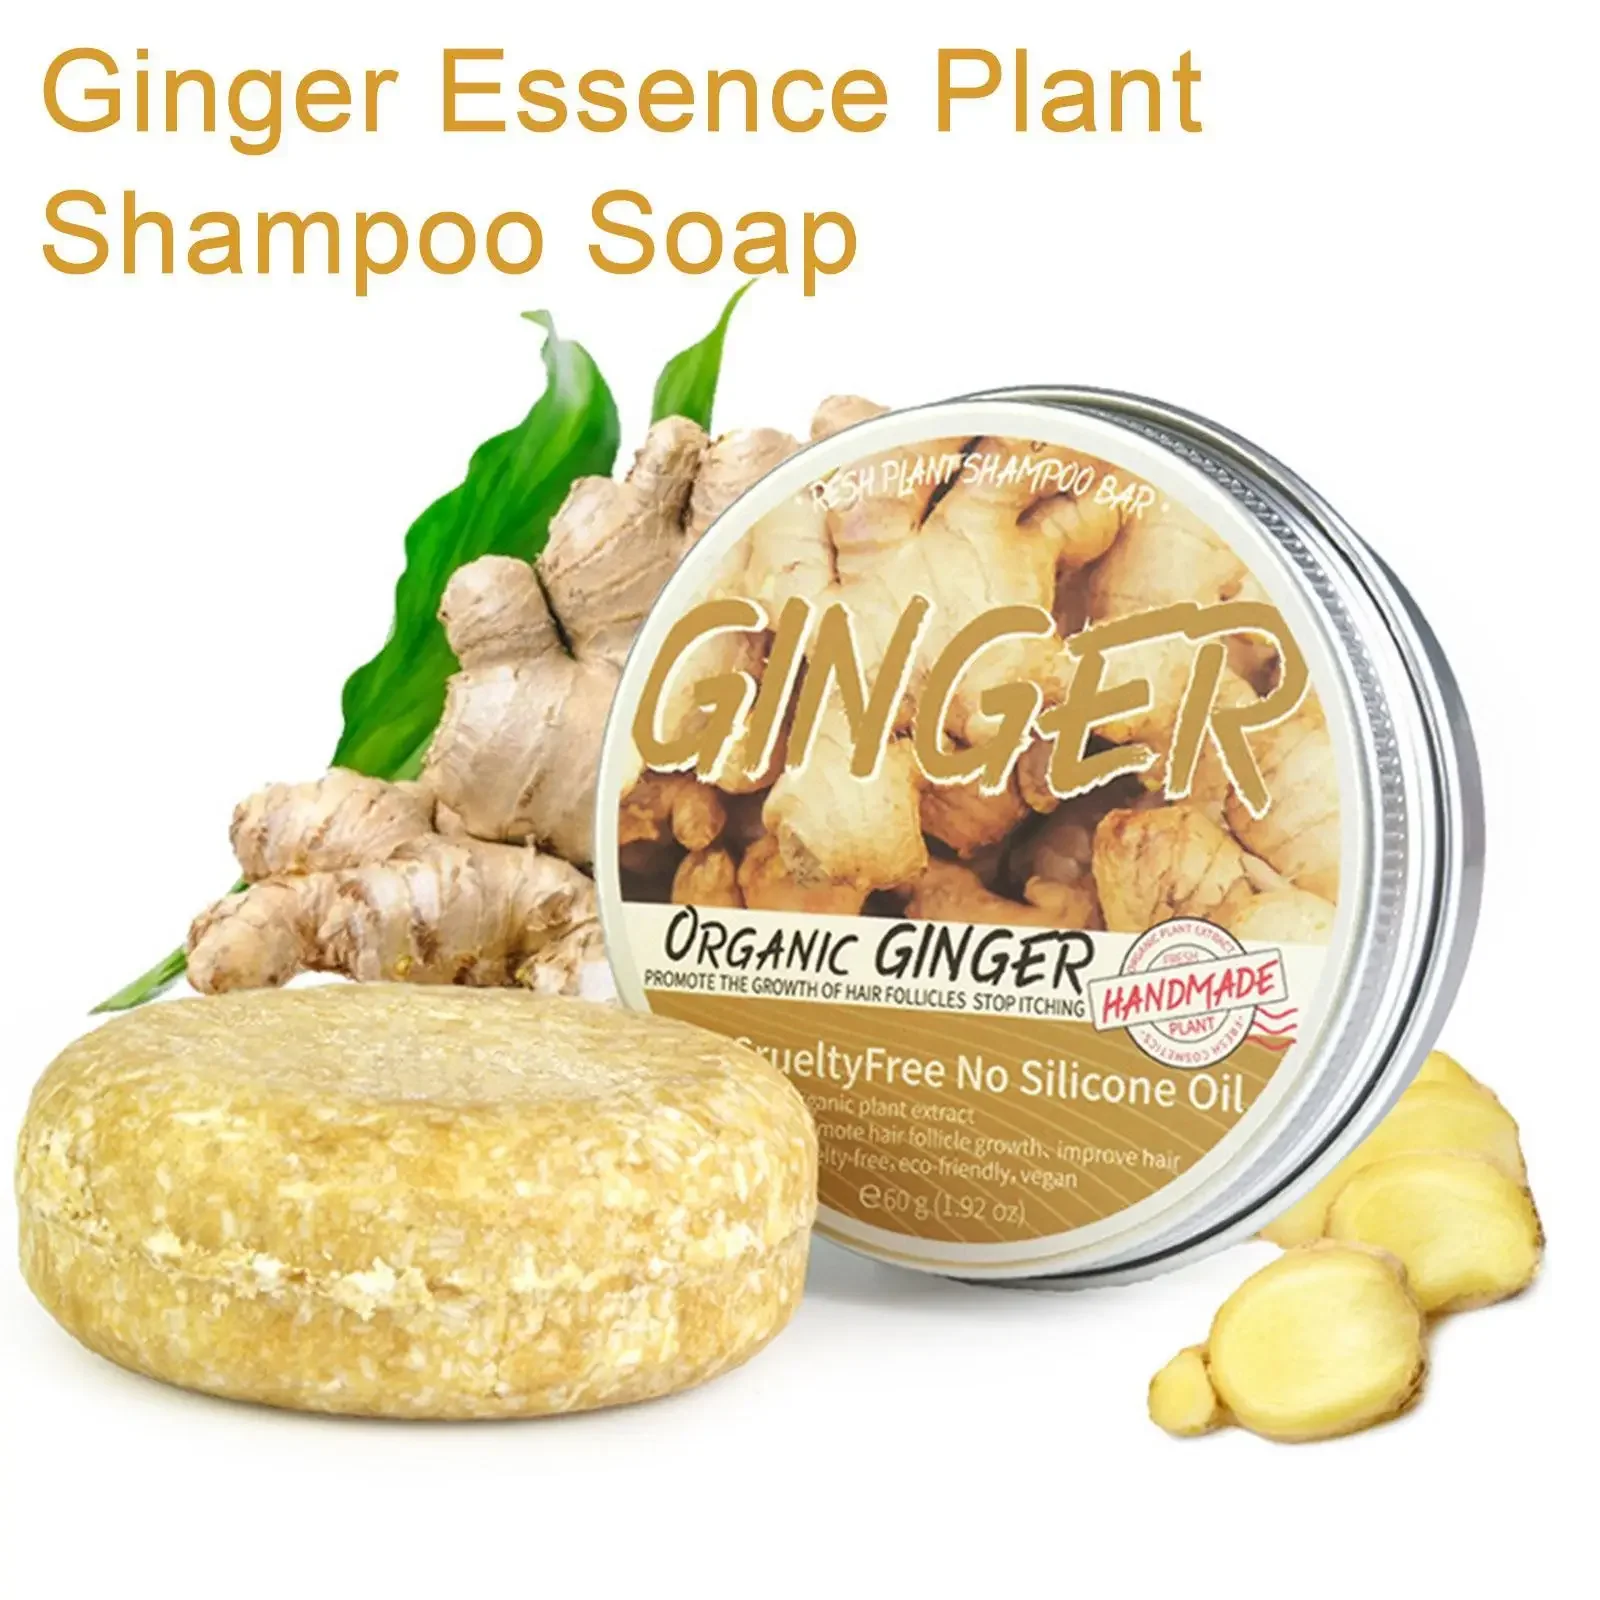 

Мыло Heallor Ginger Polygonum, холоднообработанное мыло, шампунь для волос, чистые растительные шампуни для ухода за волосами